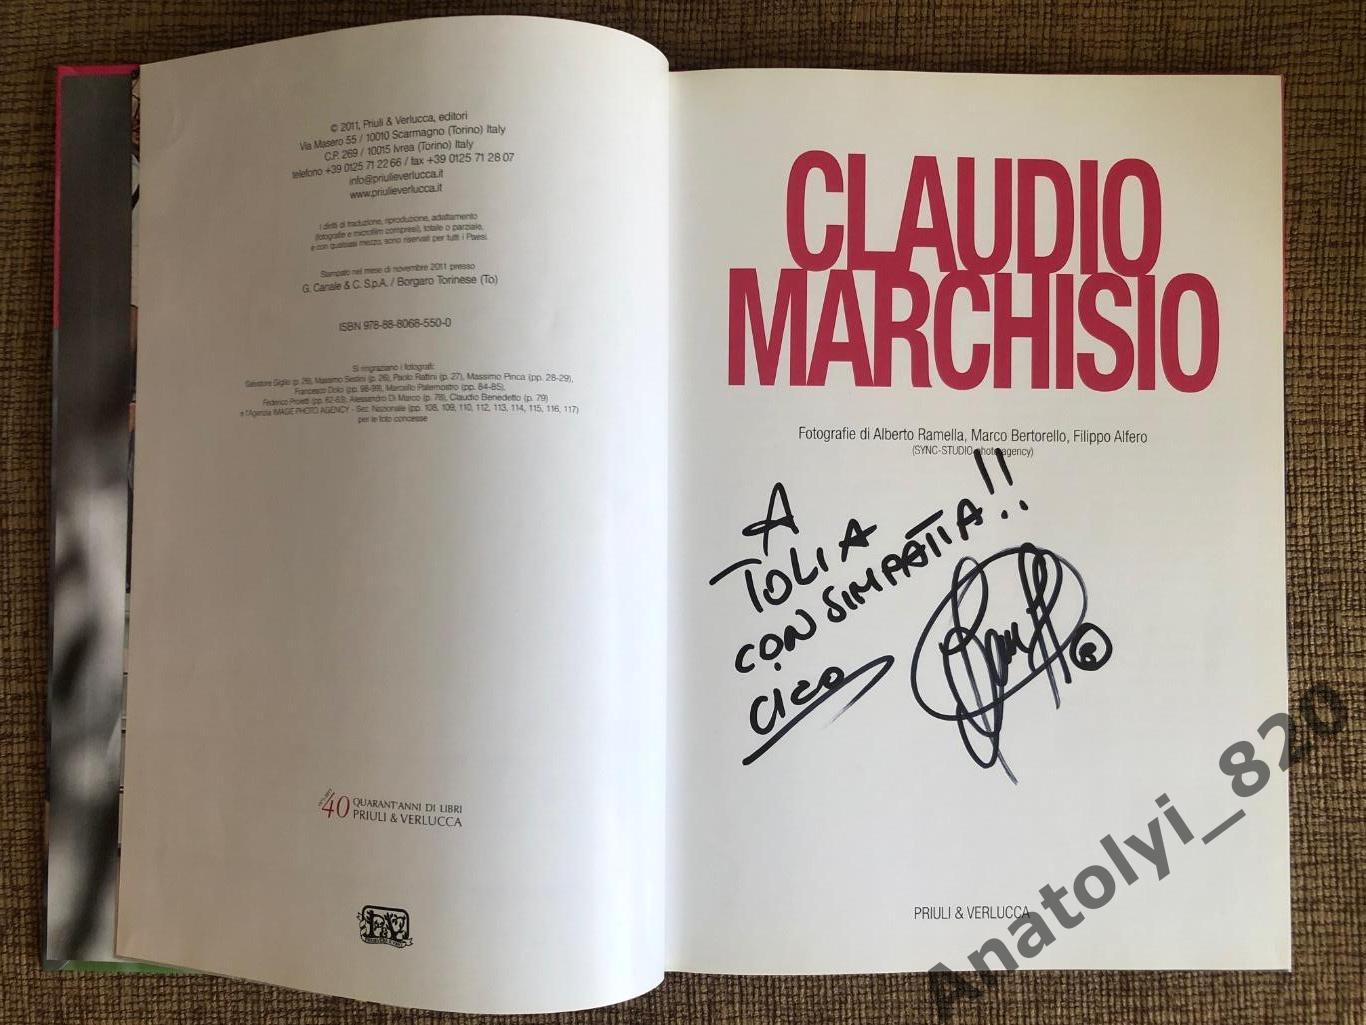 Книга Клаудио Маркизио (Claudio Marchisio) офиц. издание с автографом игрока 1